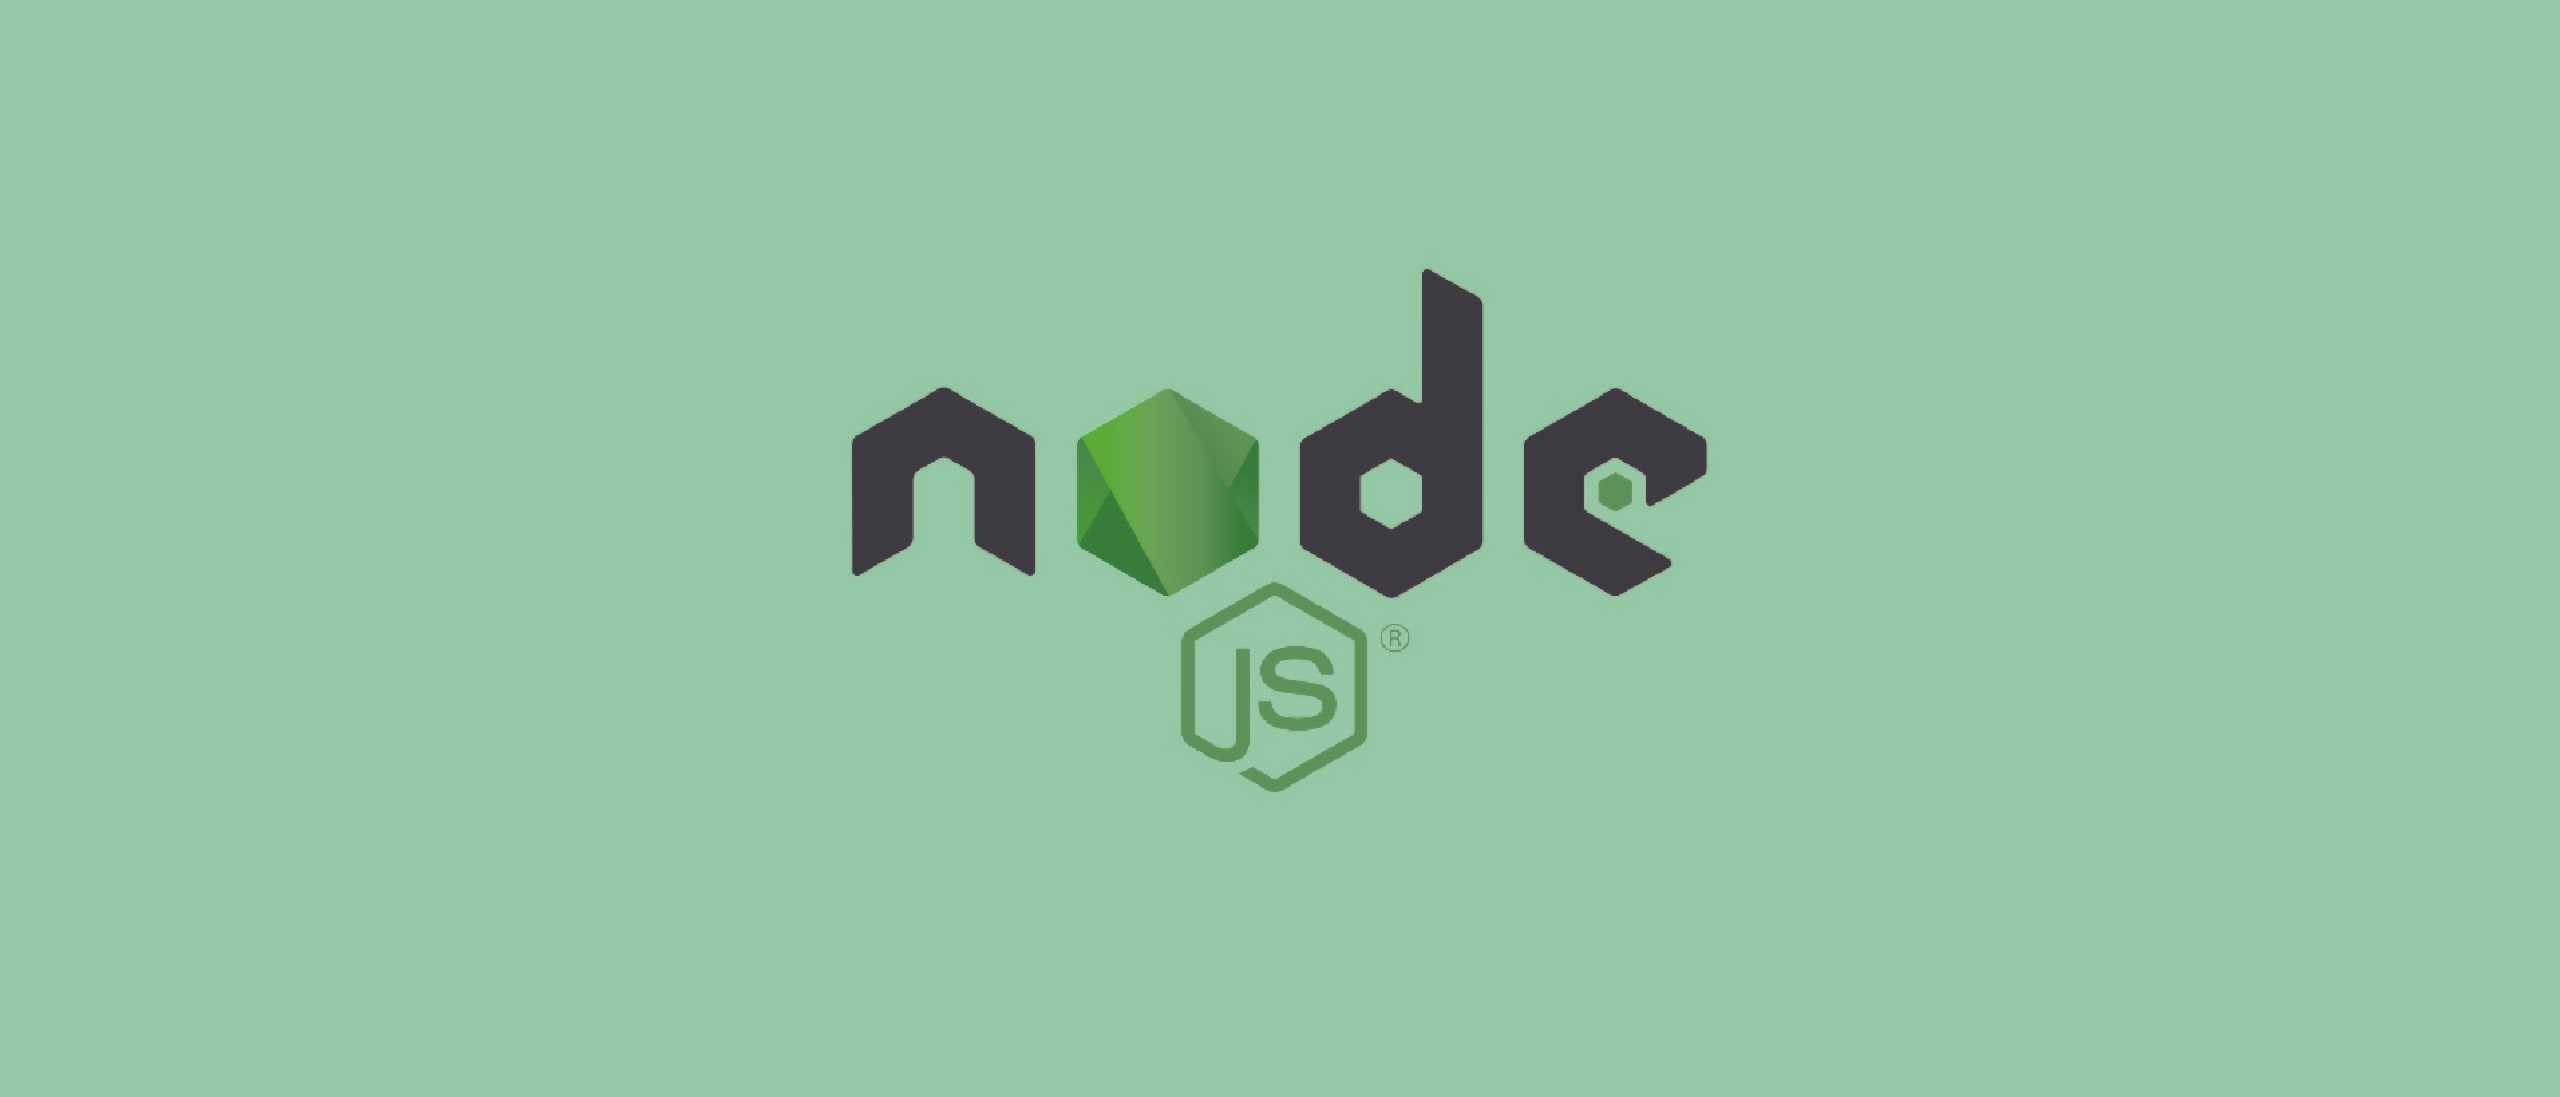 NodeJs cho người mới lập trình